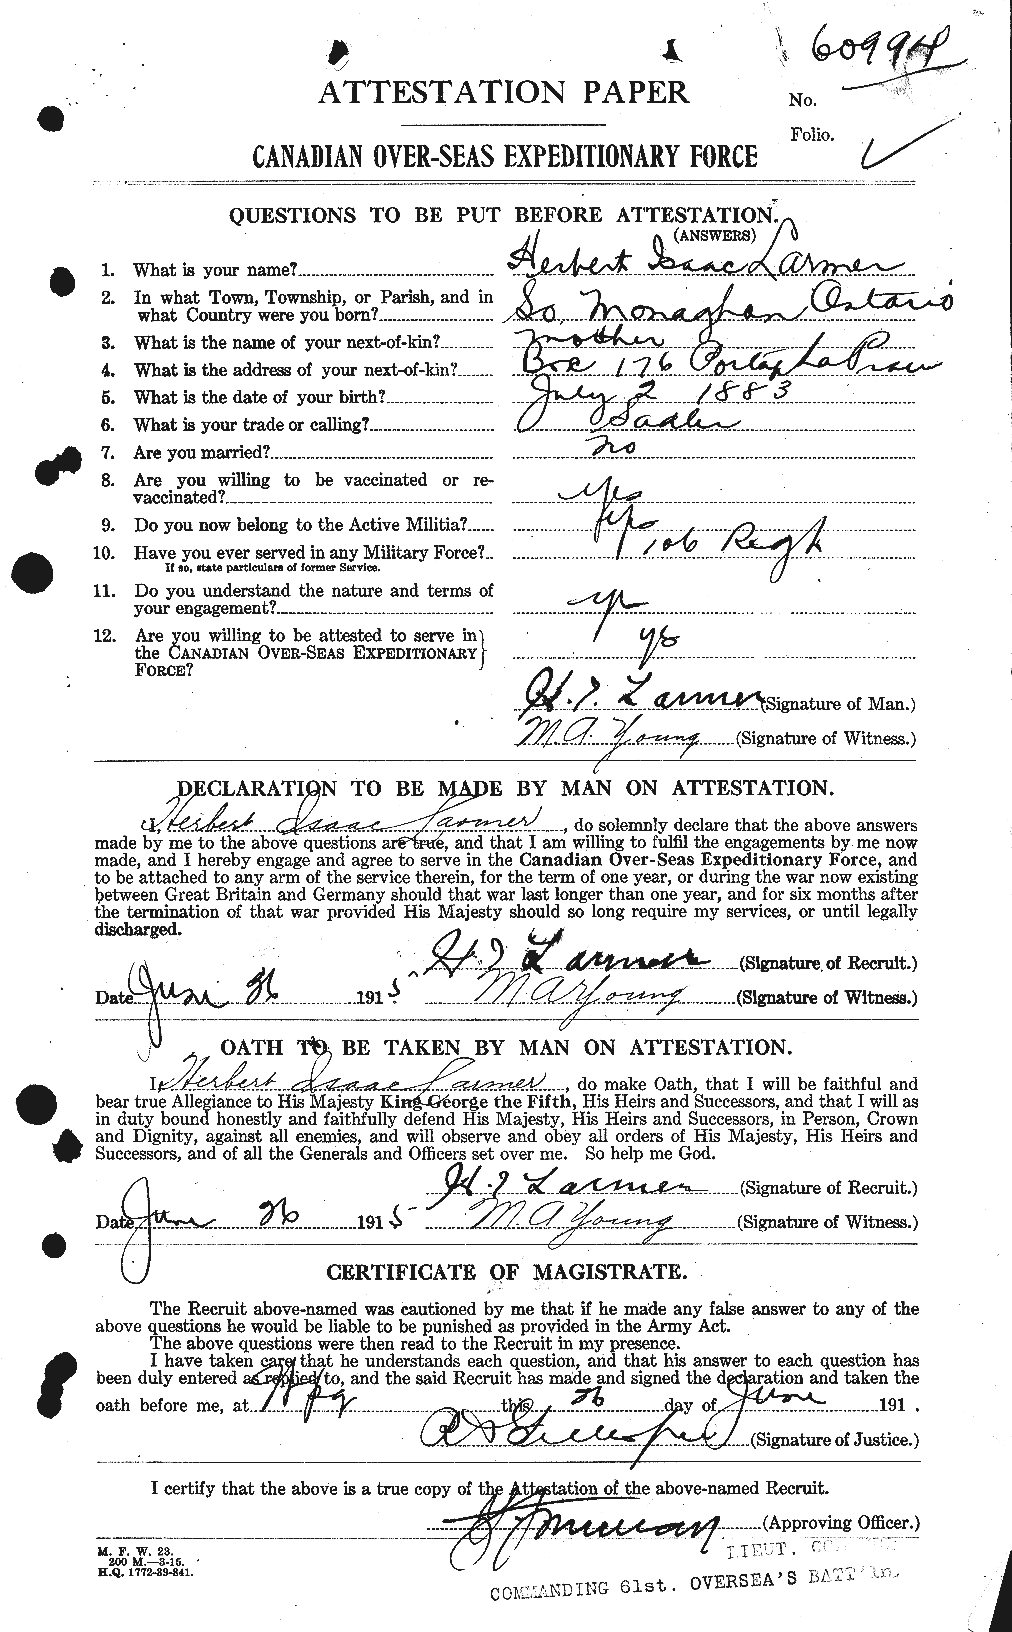 Dossiers du Personnel de la Première Guerre mondiale - CEC 450638a